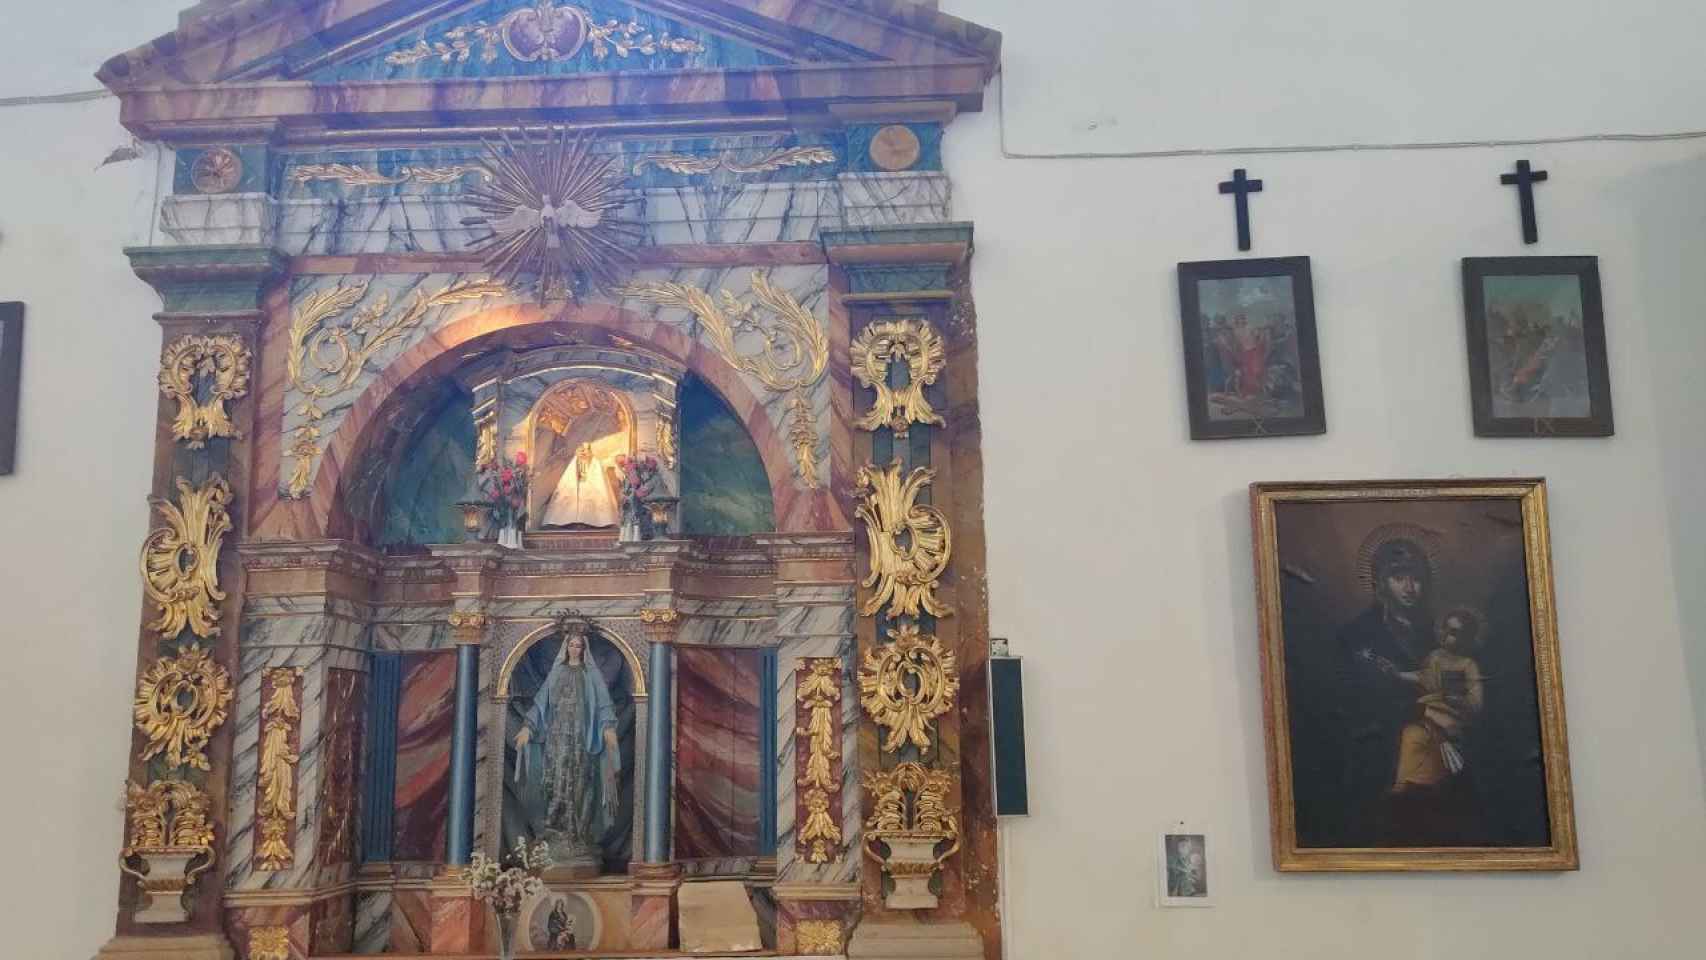 La pintura restaurada, tal y como se conserva en la iglesia de San Jorge (Penagos).